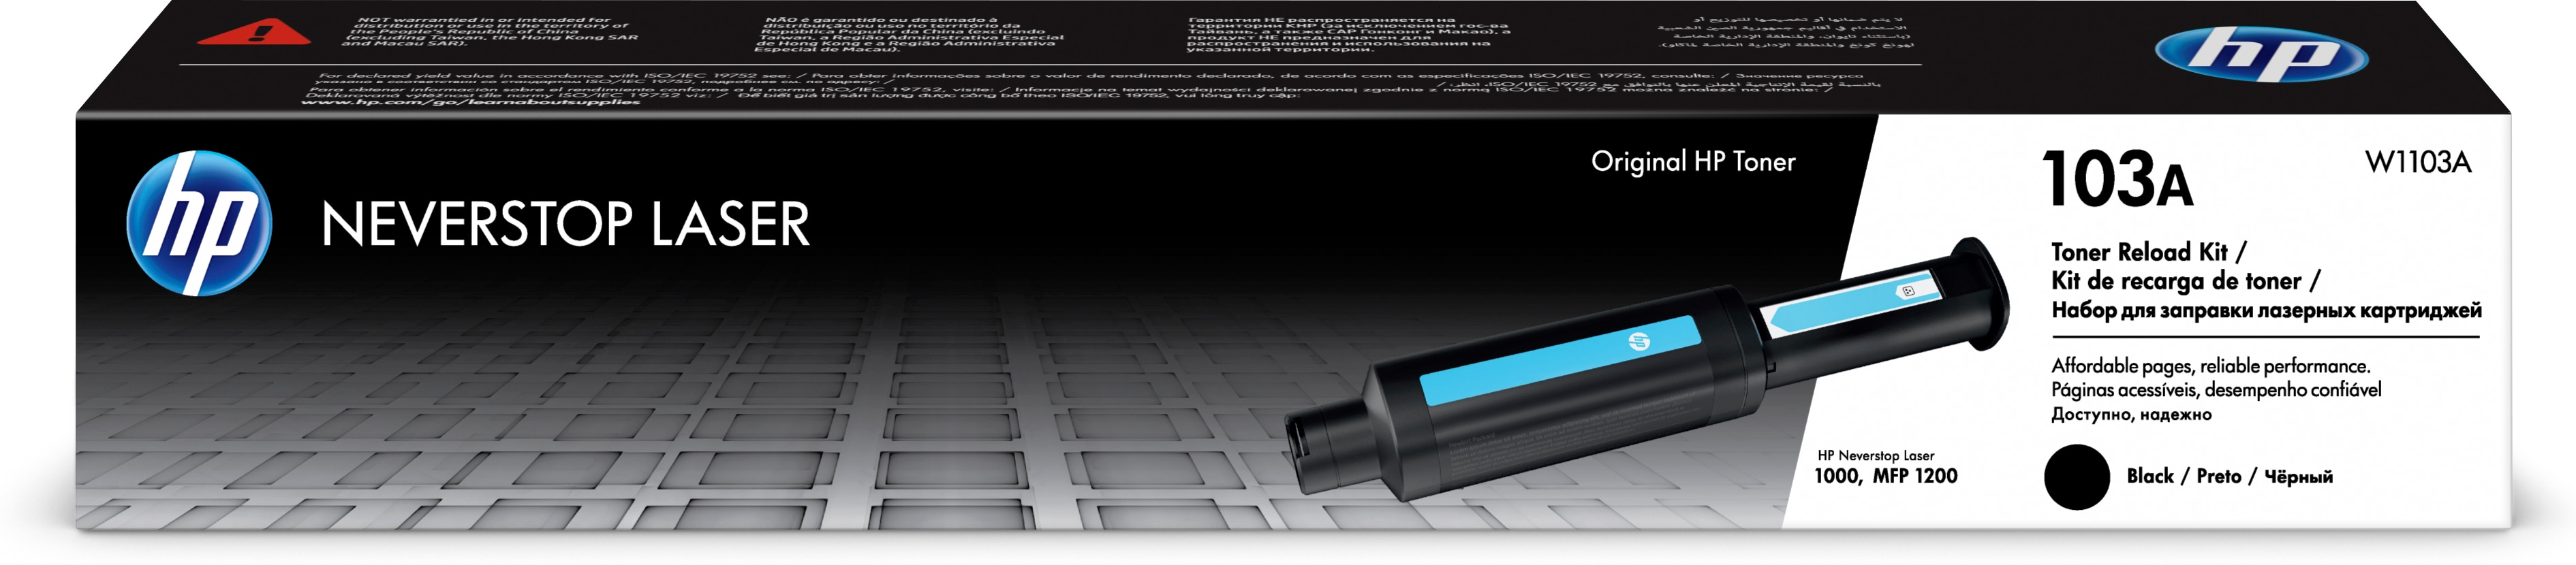 Kit De Recarga De Toner Hp Neverstop Laser 103A Negro W1103A